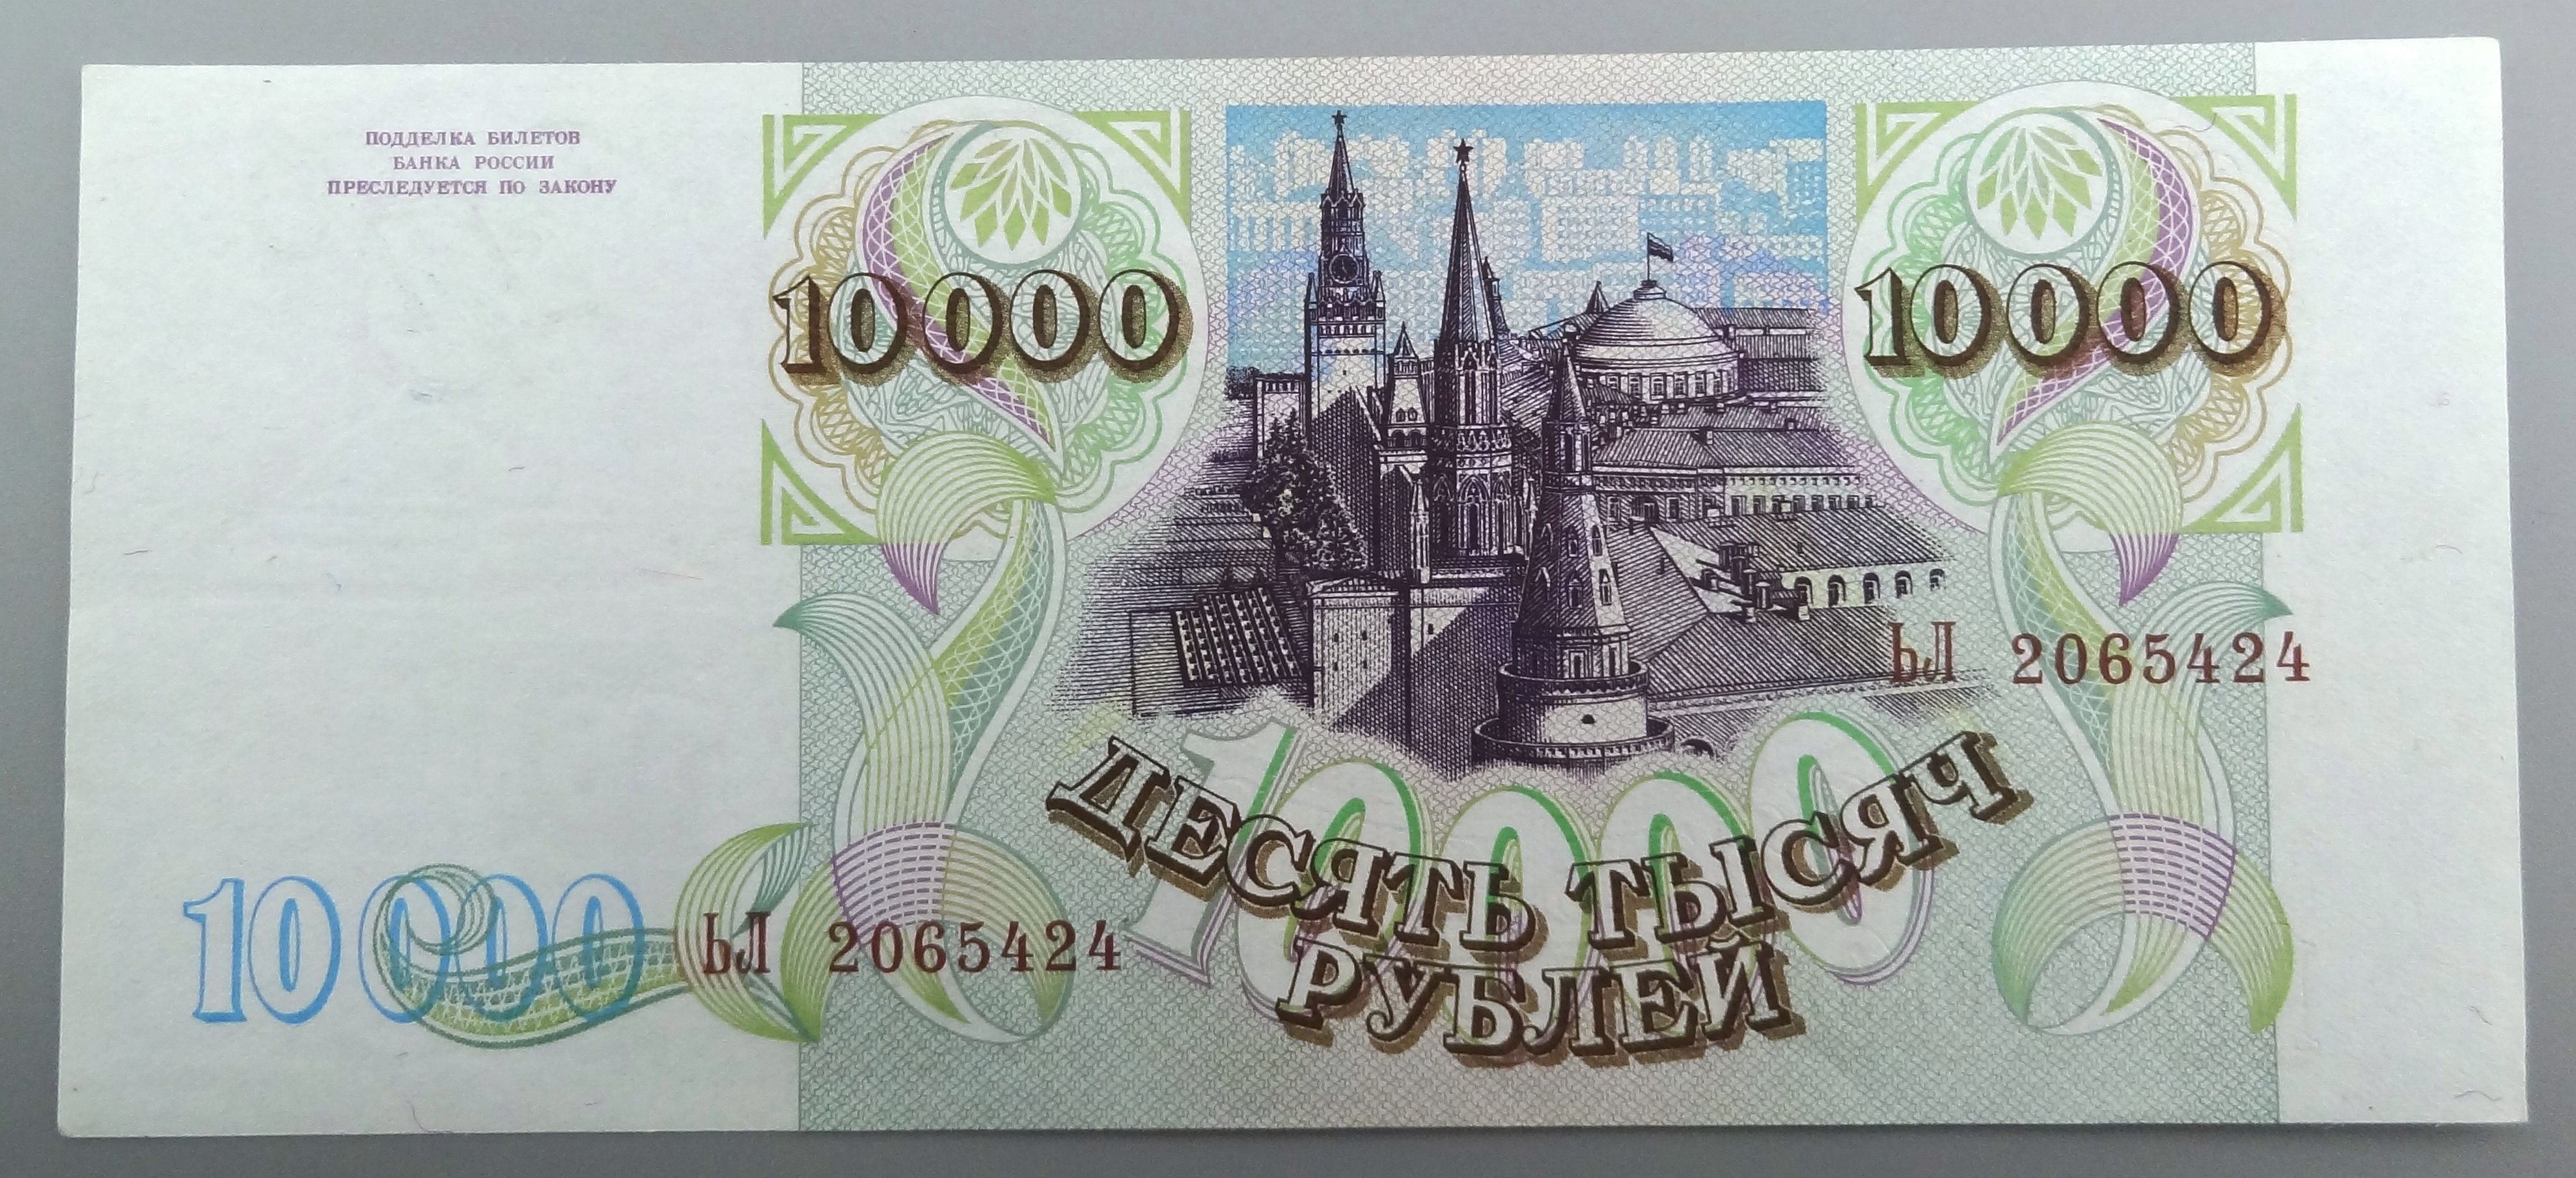 600 рублей россии. Купюра 10000 рублей 1993. Купюра 10000 рублей 1992 года. Российская купюра 10000. Банкнота 10000 рублей 1993 года.